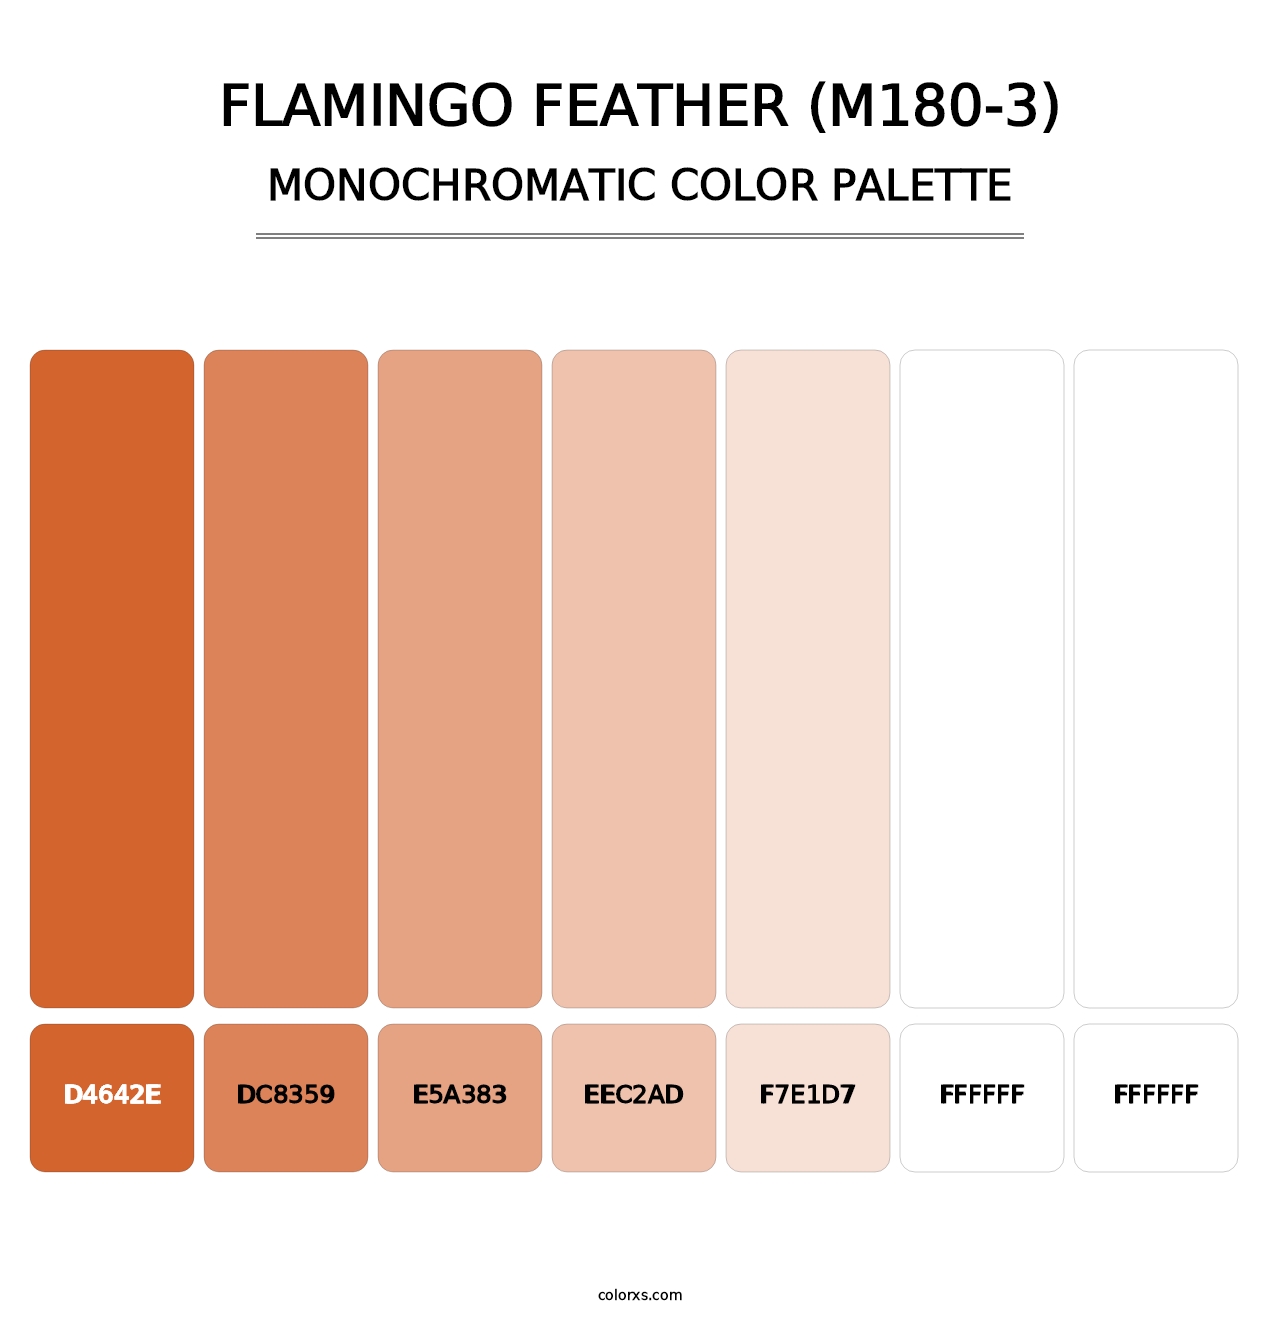 Flamingo Feather (M180-3) - Monochromatic Color Palette